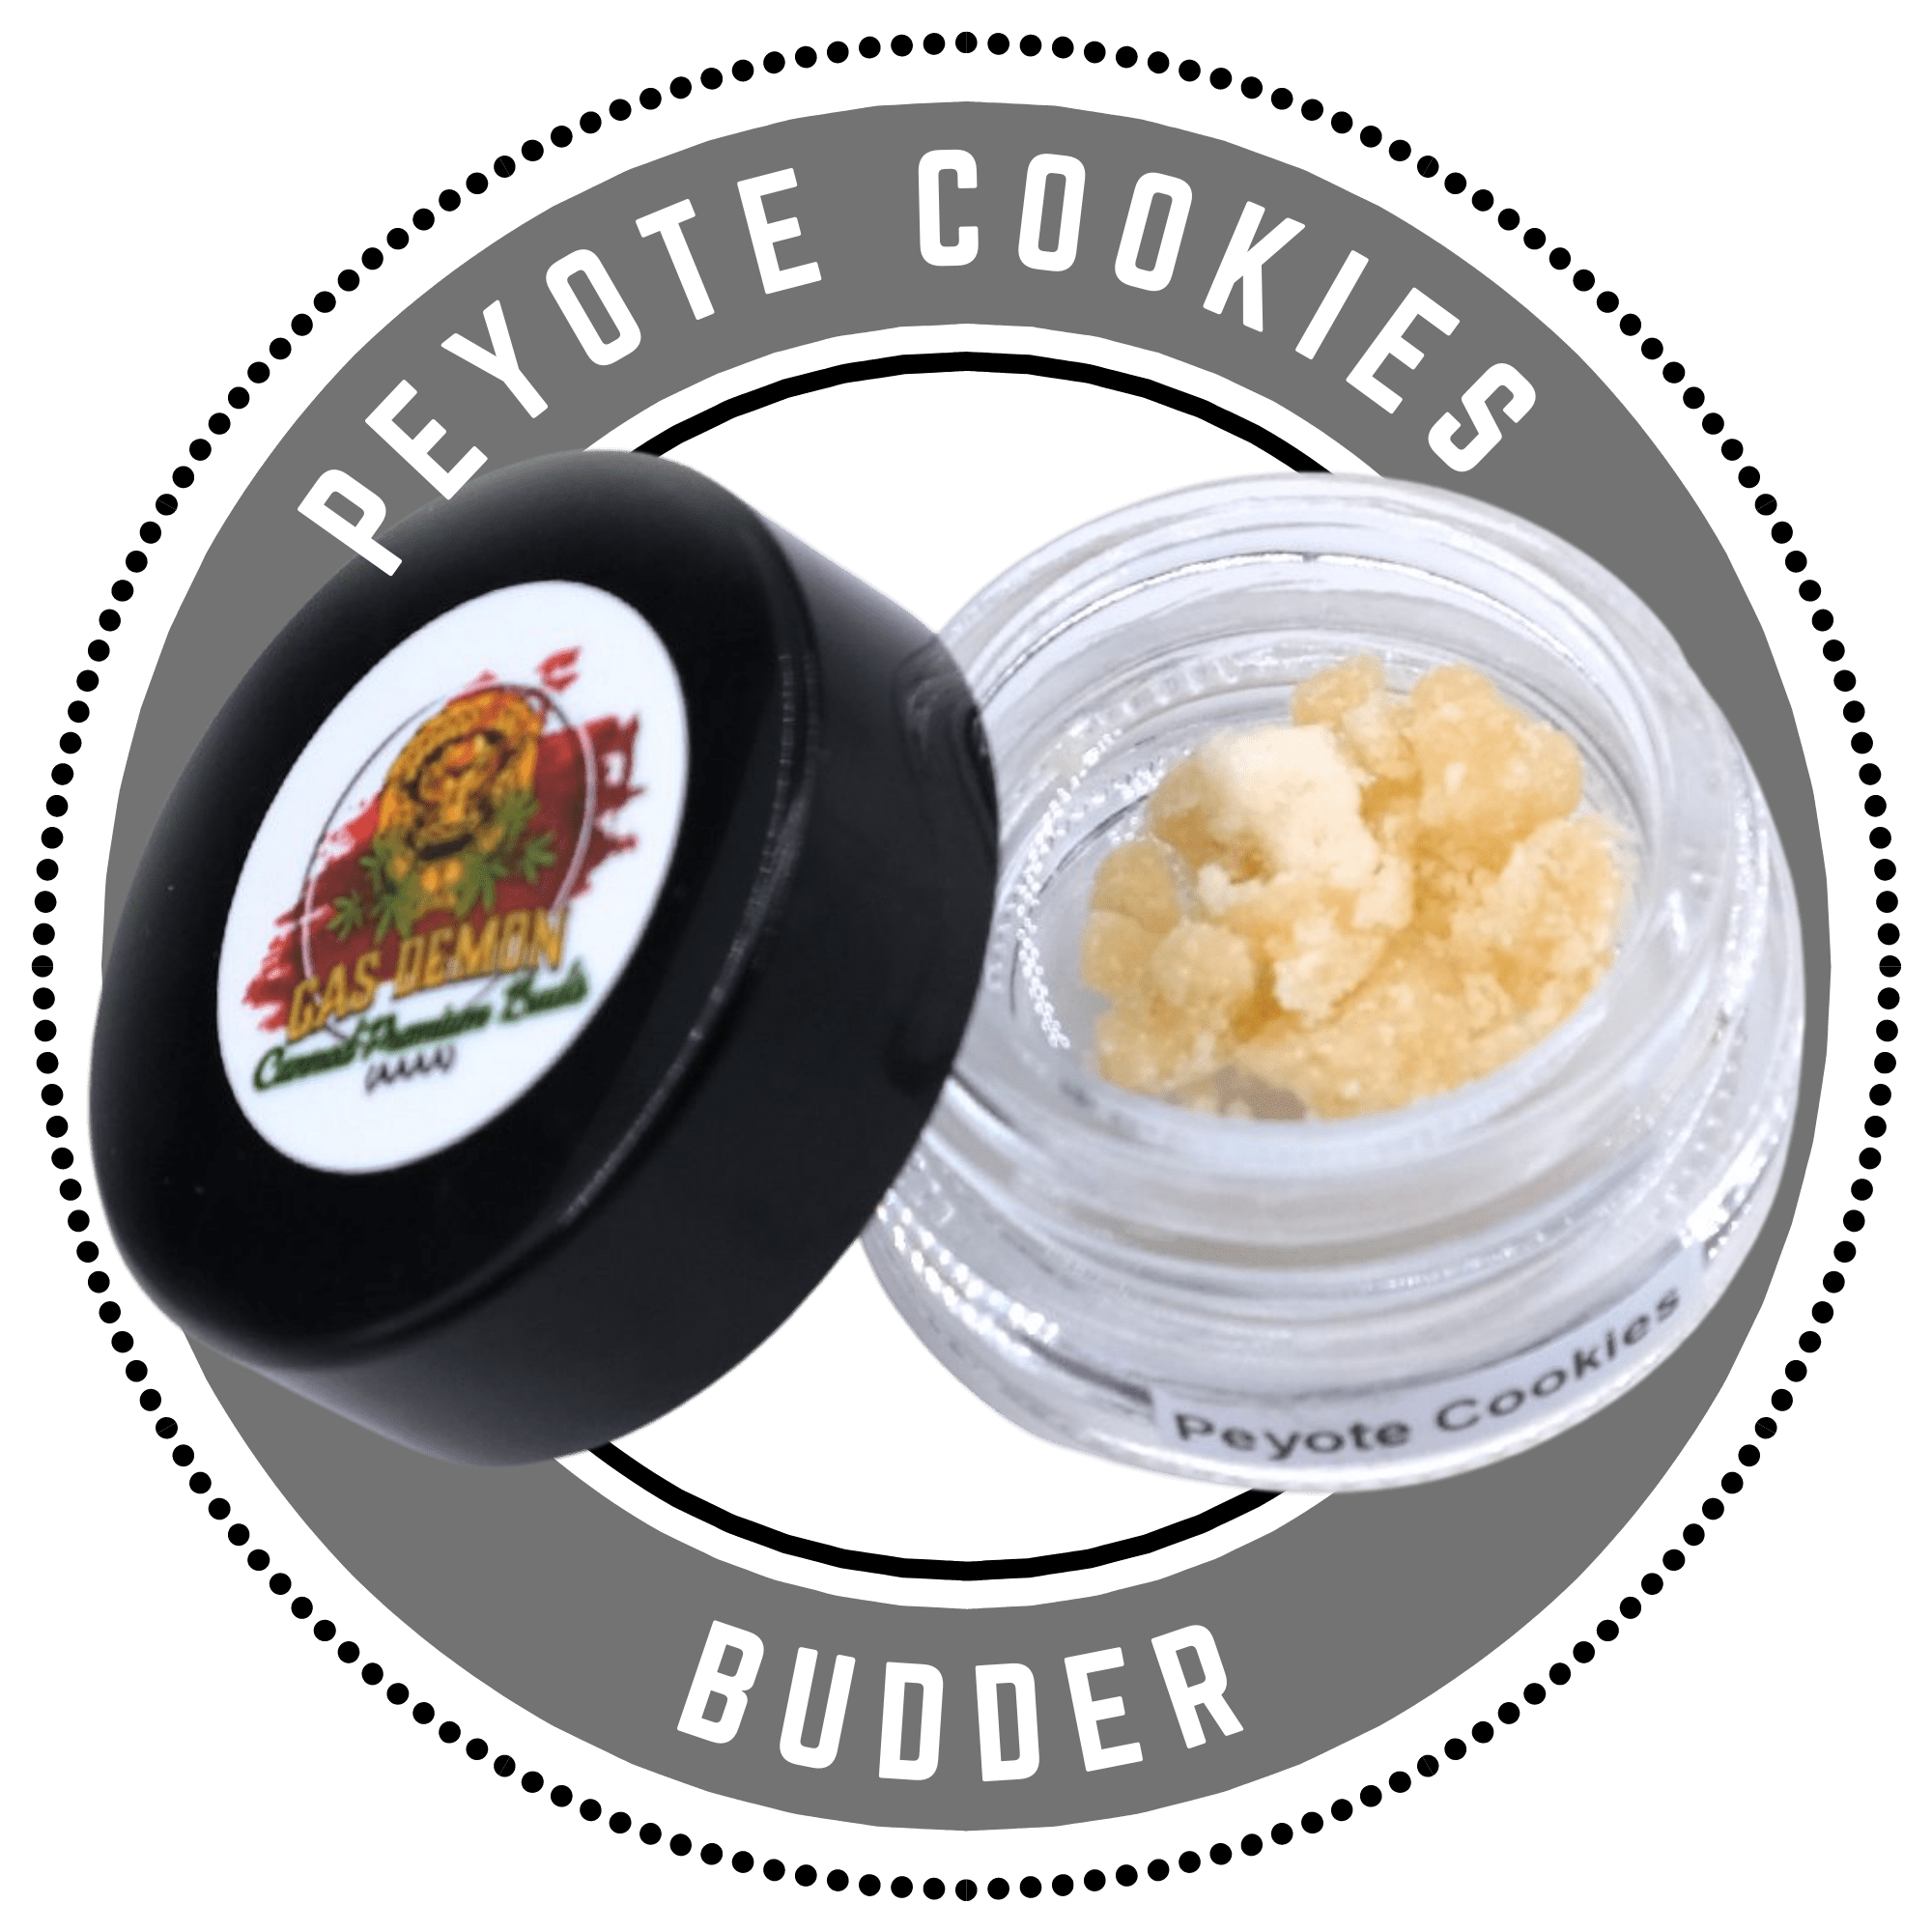 Peyote Cookies budder